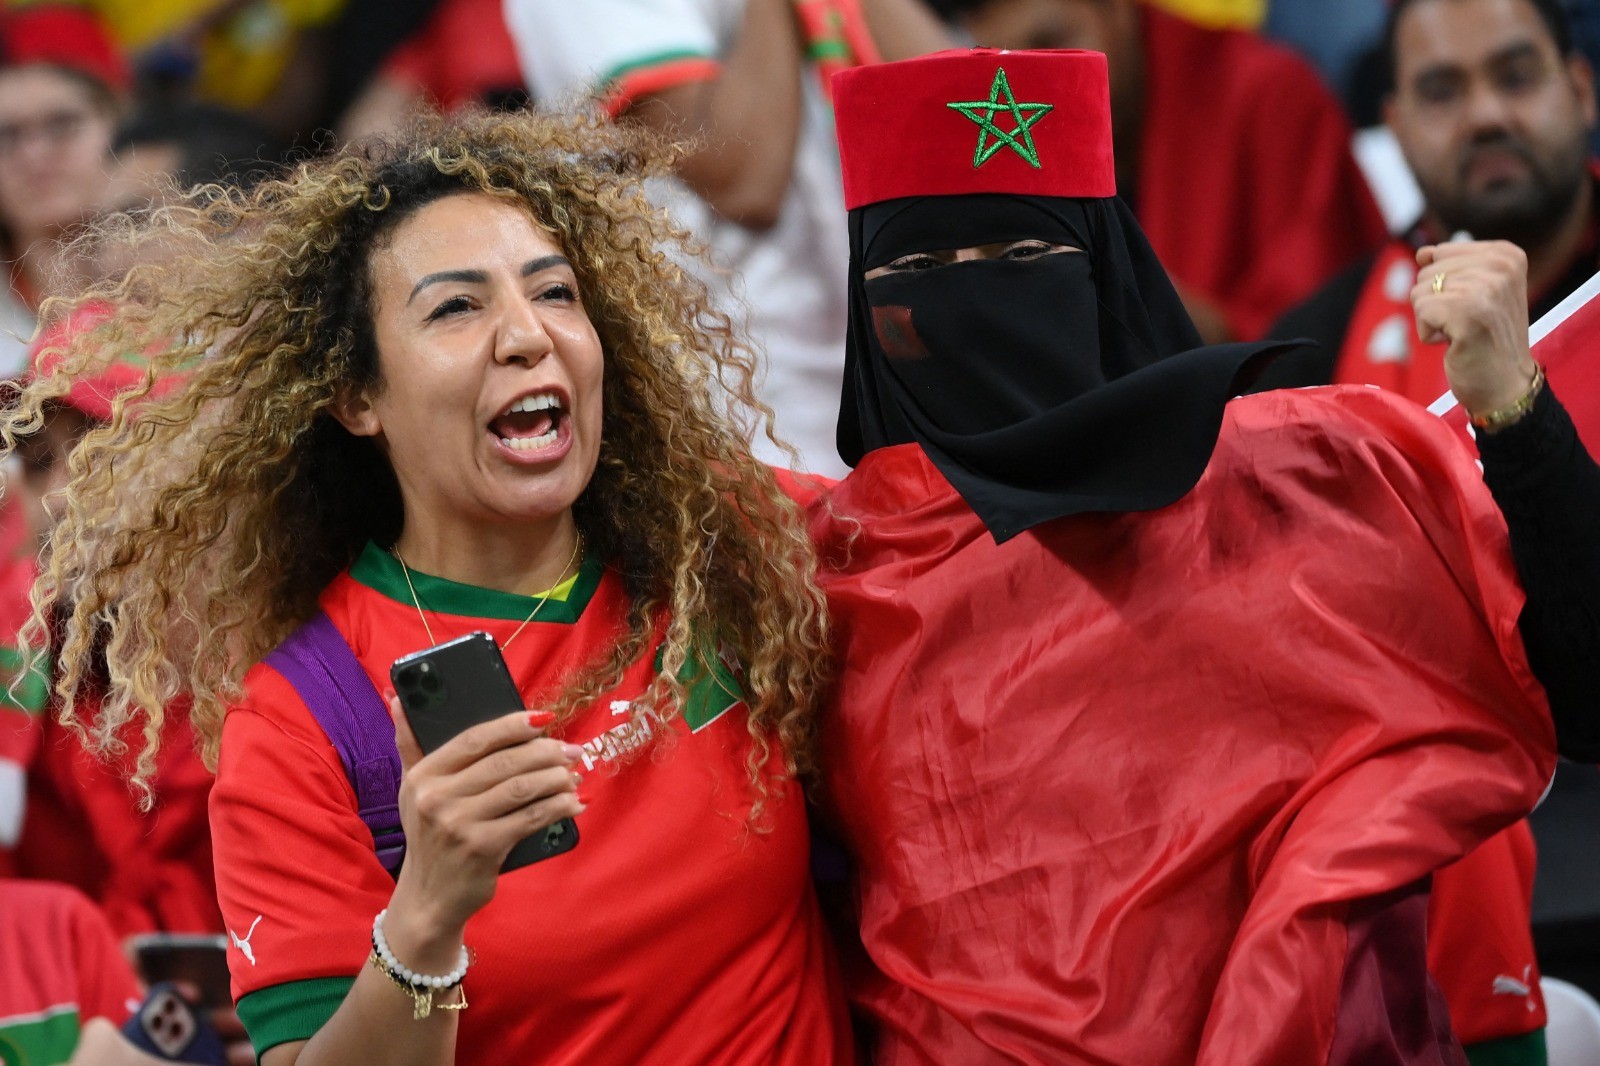 المغاربة يحتشدون في ملعب المباراة لتشجيع منتحبهم .. تصوير (الفرنسية) 7.jpg